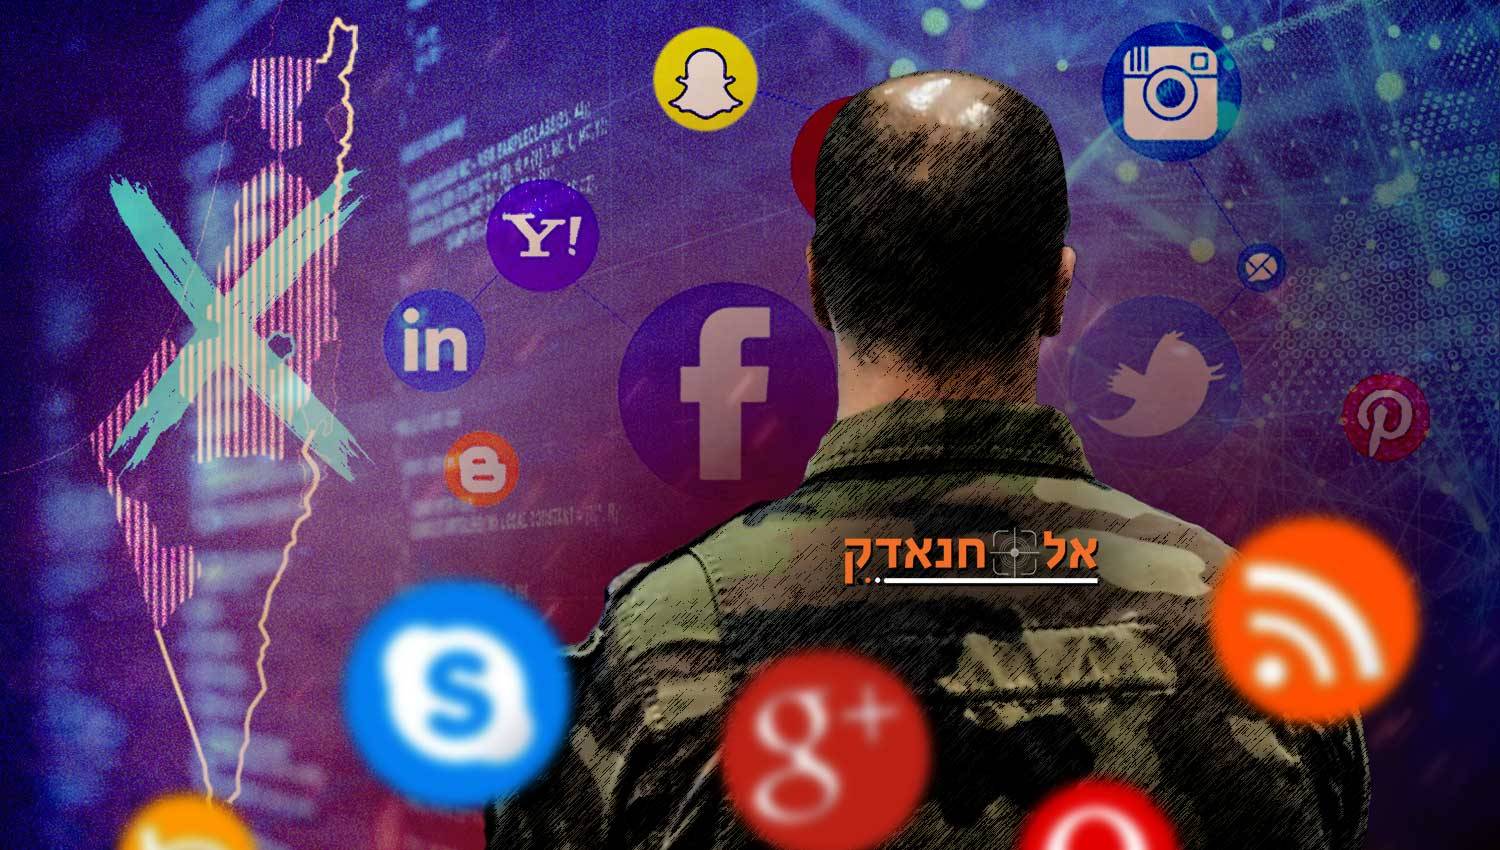 מלחמת מידע: מאמץ ישראלי שיטתי לנצח בקרב הנרטיבי